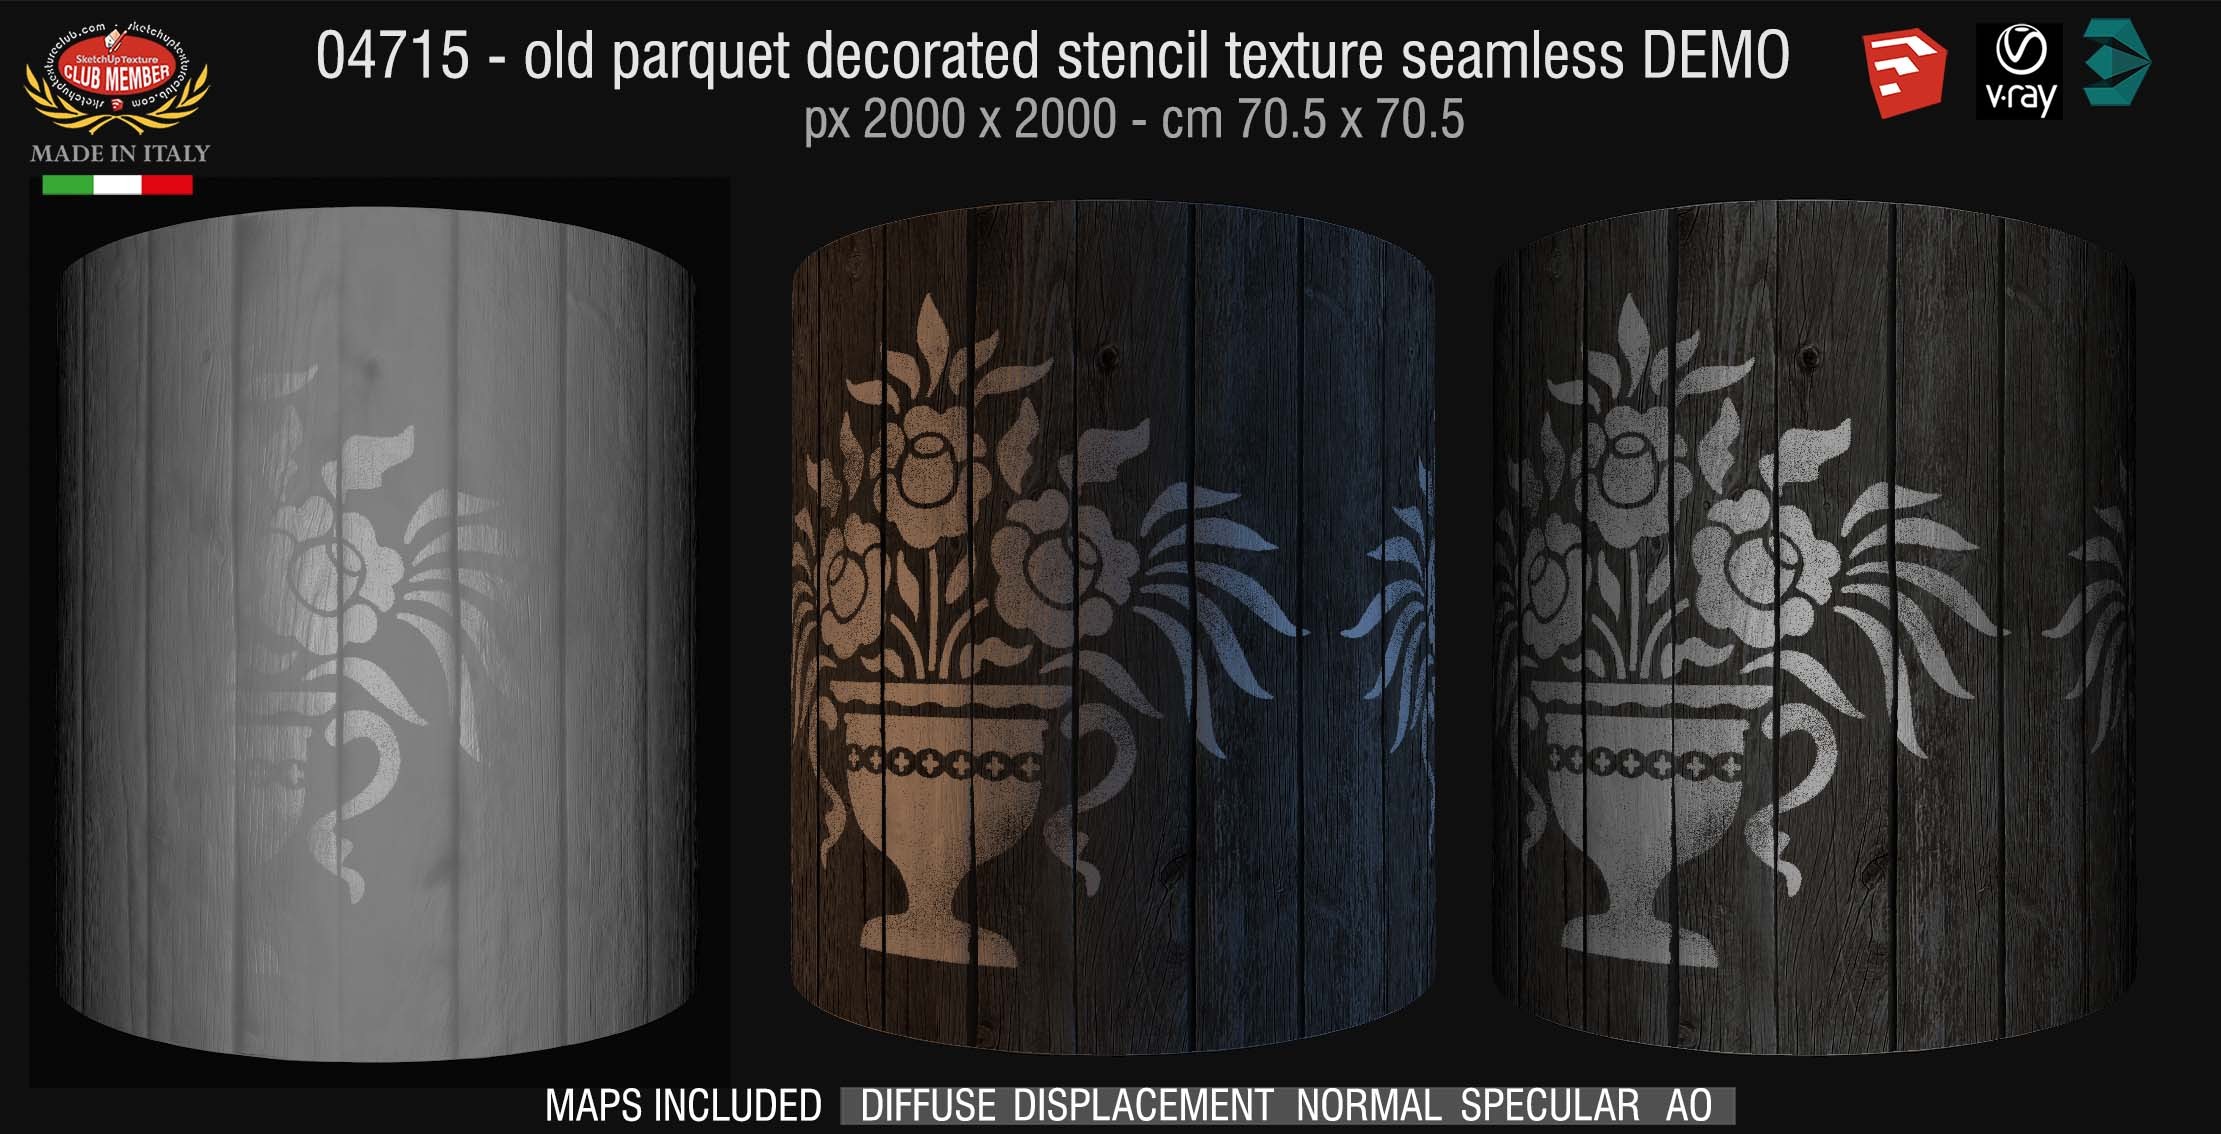 04715 HR Parquet decorated stencil texture seamless + maps DEMO